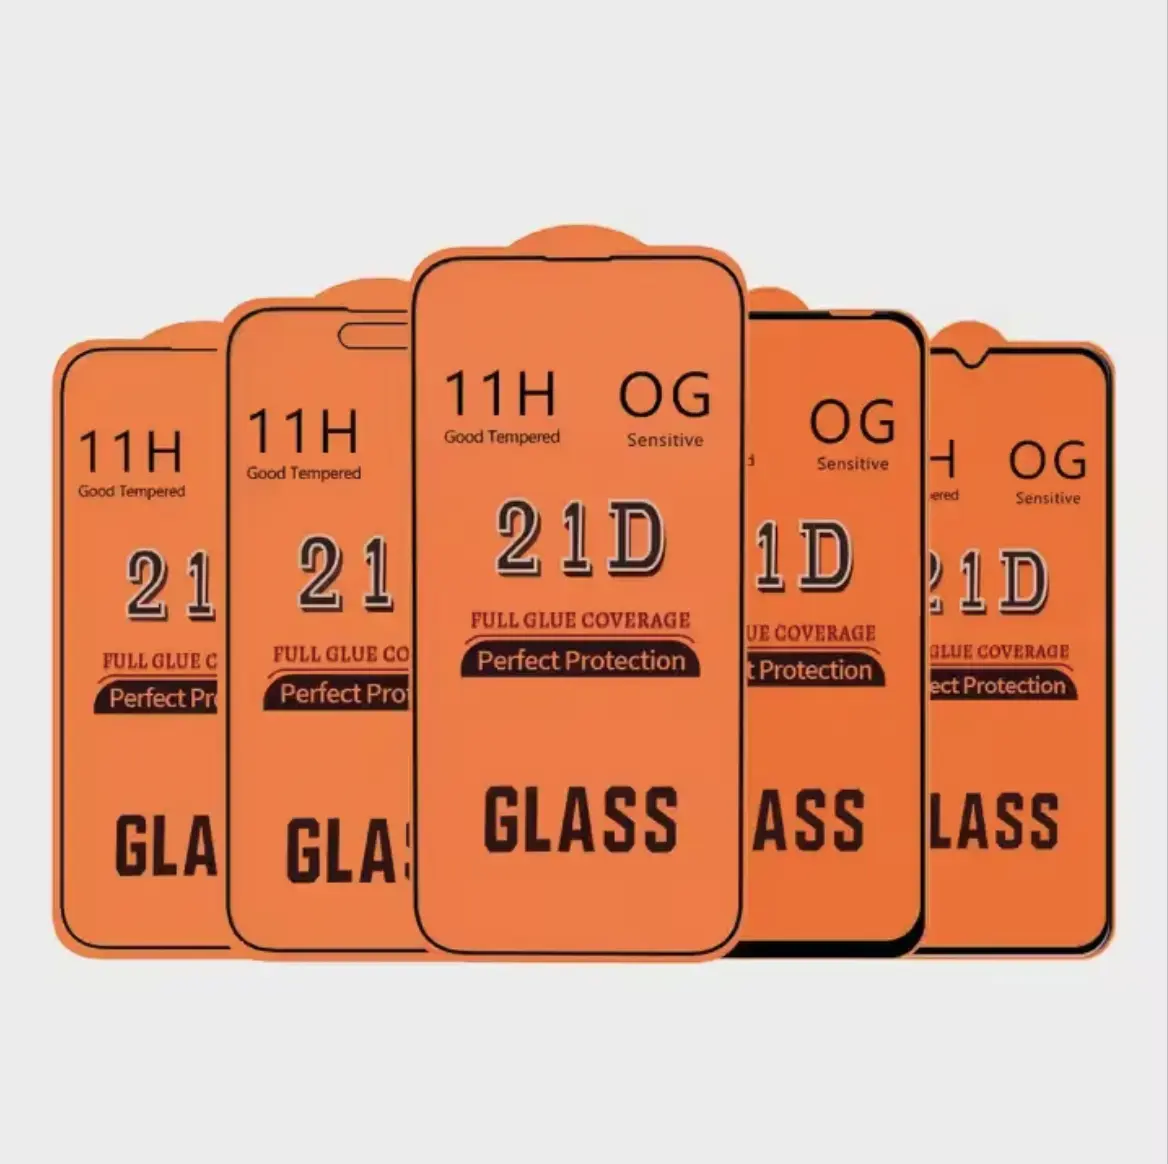 بسعر المصنع 21D شاشة واقية للهاتف المحمول مقاومة للانفجار 3D 11H HD زجاج ممرد جميع العلامات التجارية والنماذج